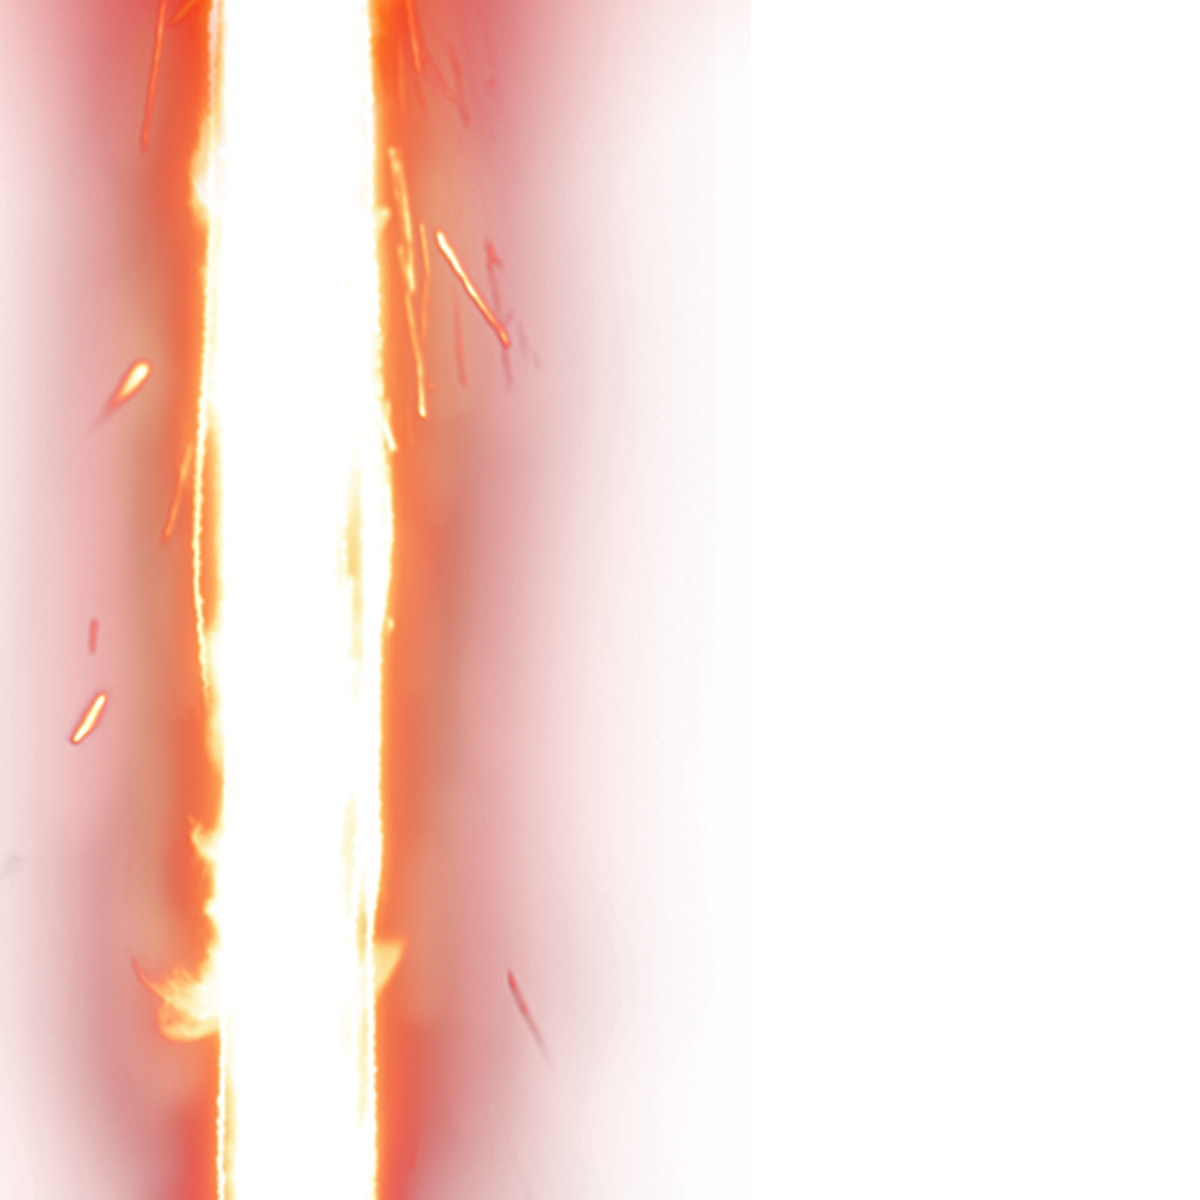 Imagen Transparente de la sable de luz roja